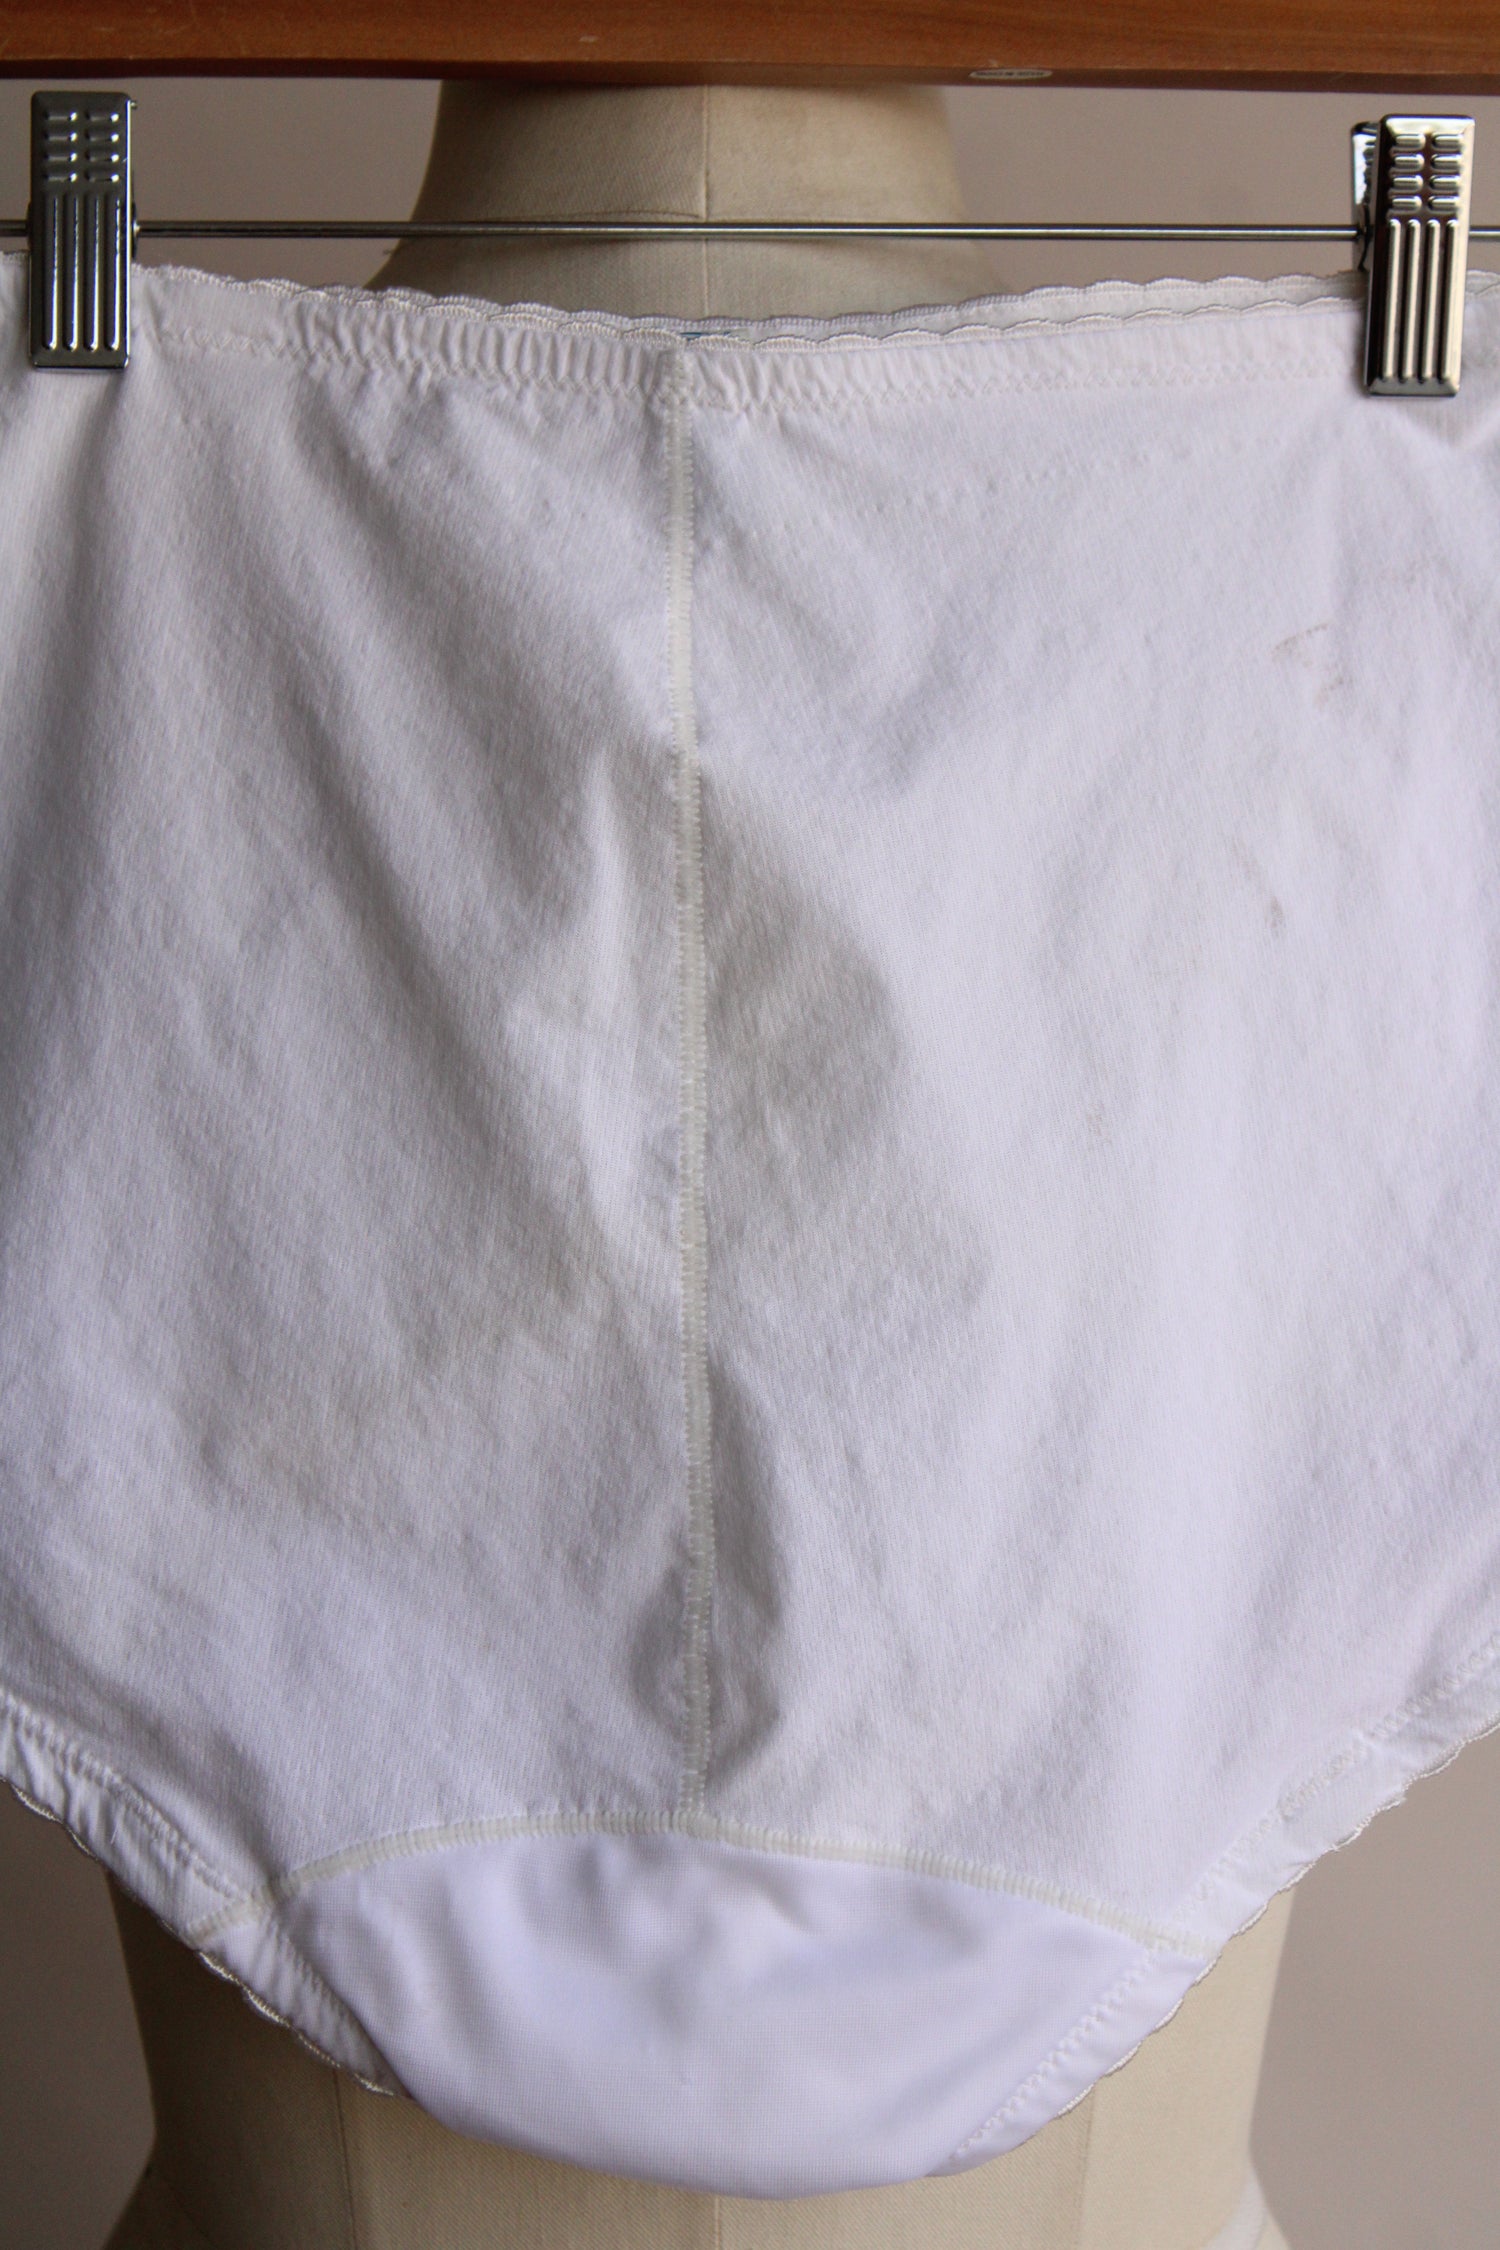 Vintage White Panty Girdle, Medium Size – Toadstool Farm Vintage